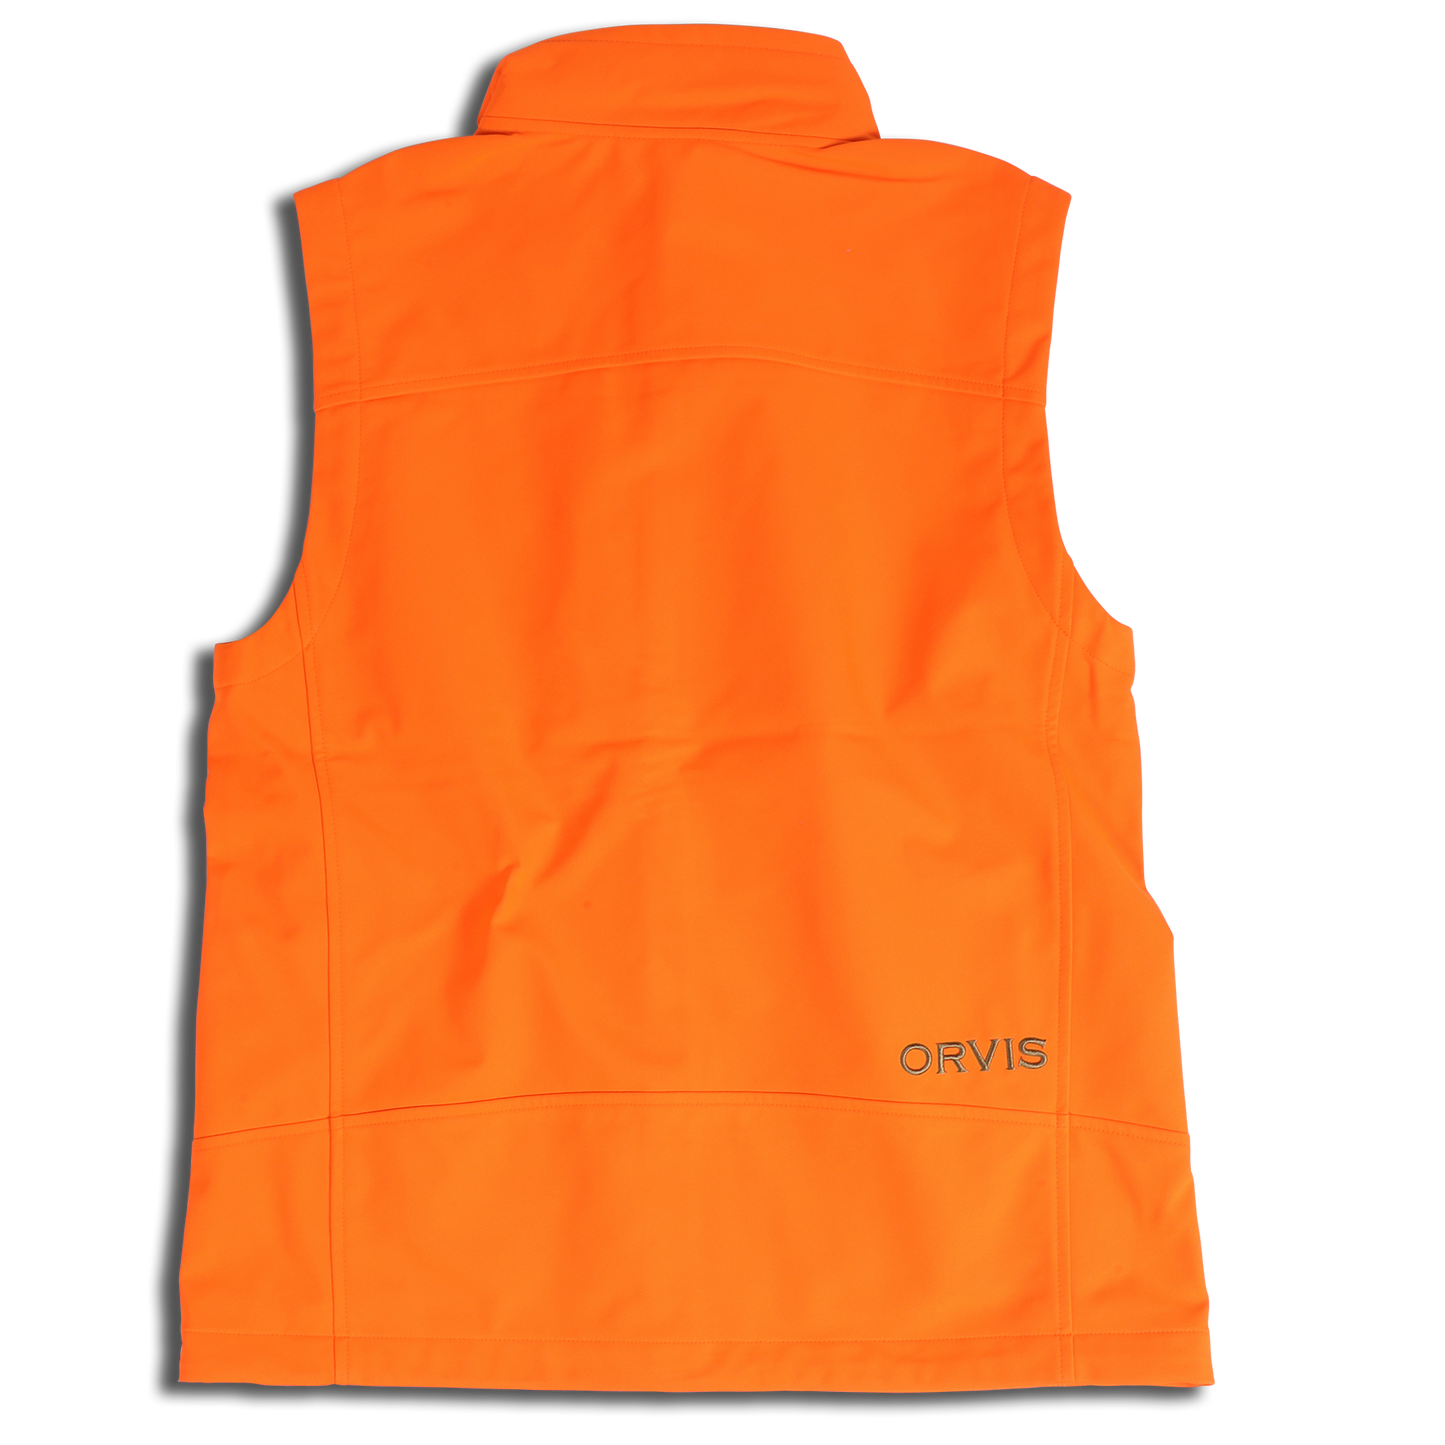 Orvis Upland Softshell Vest